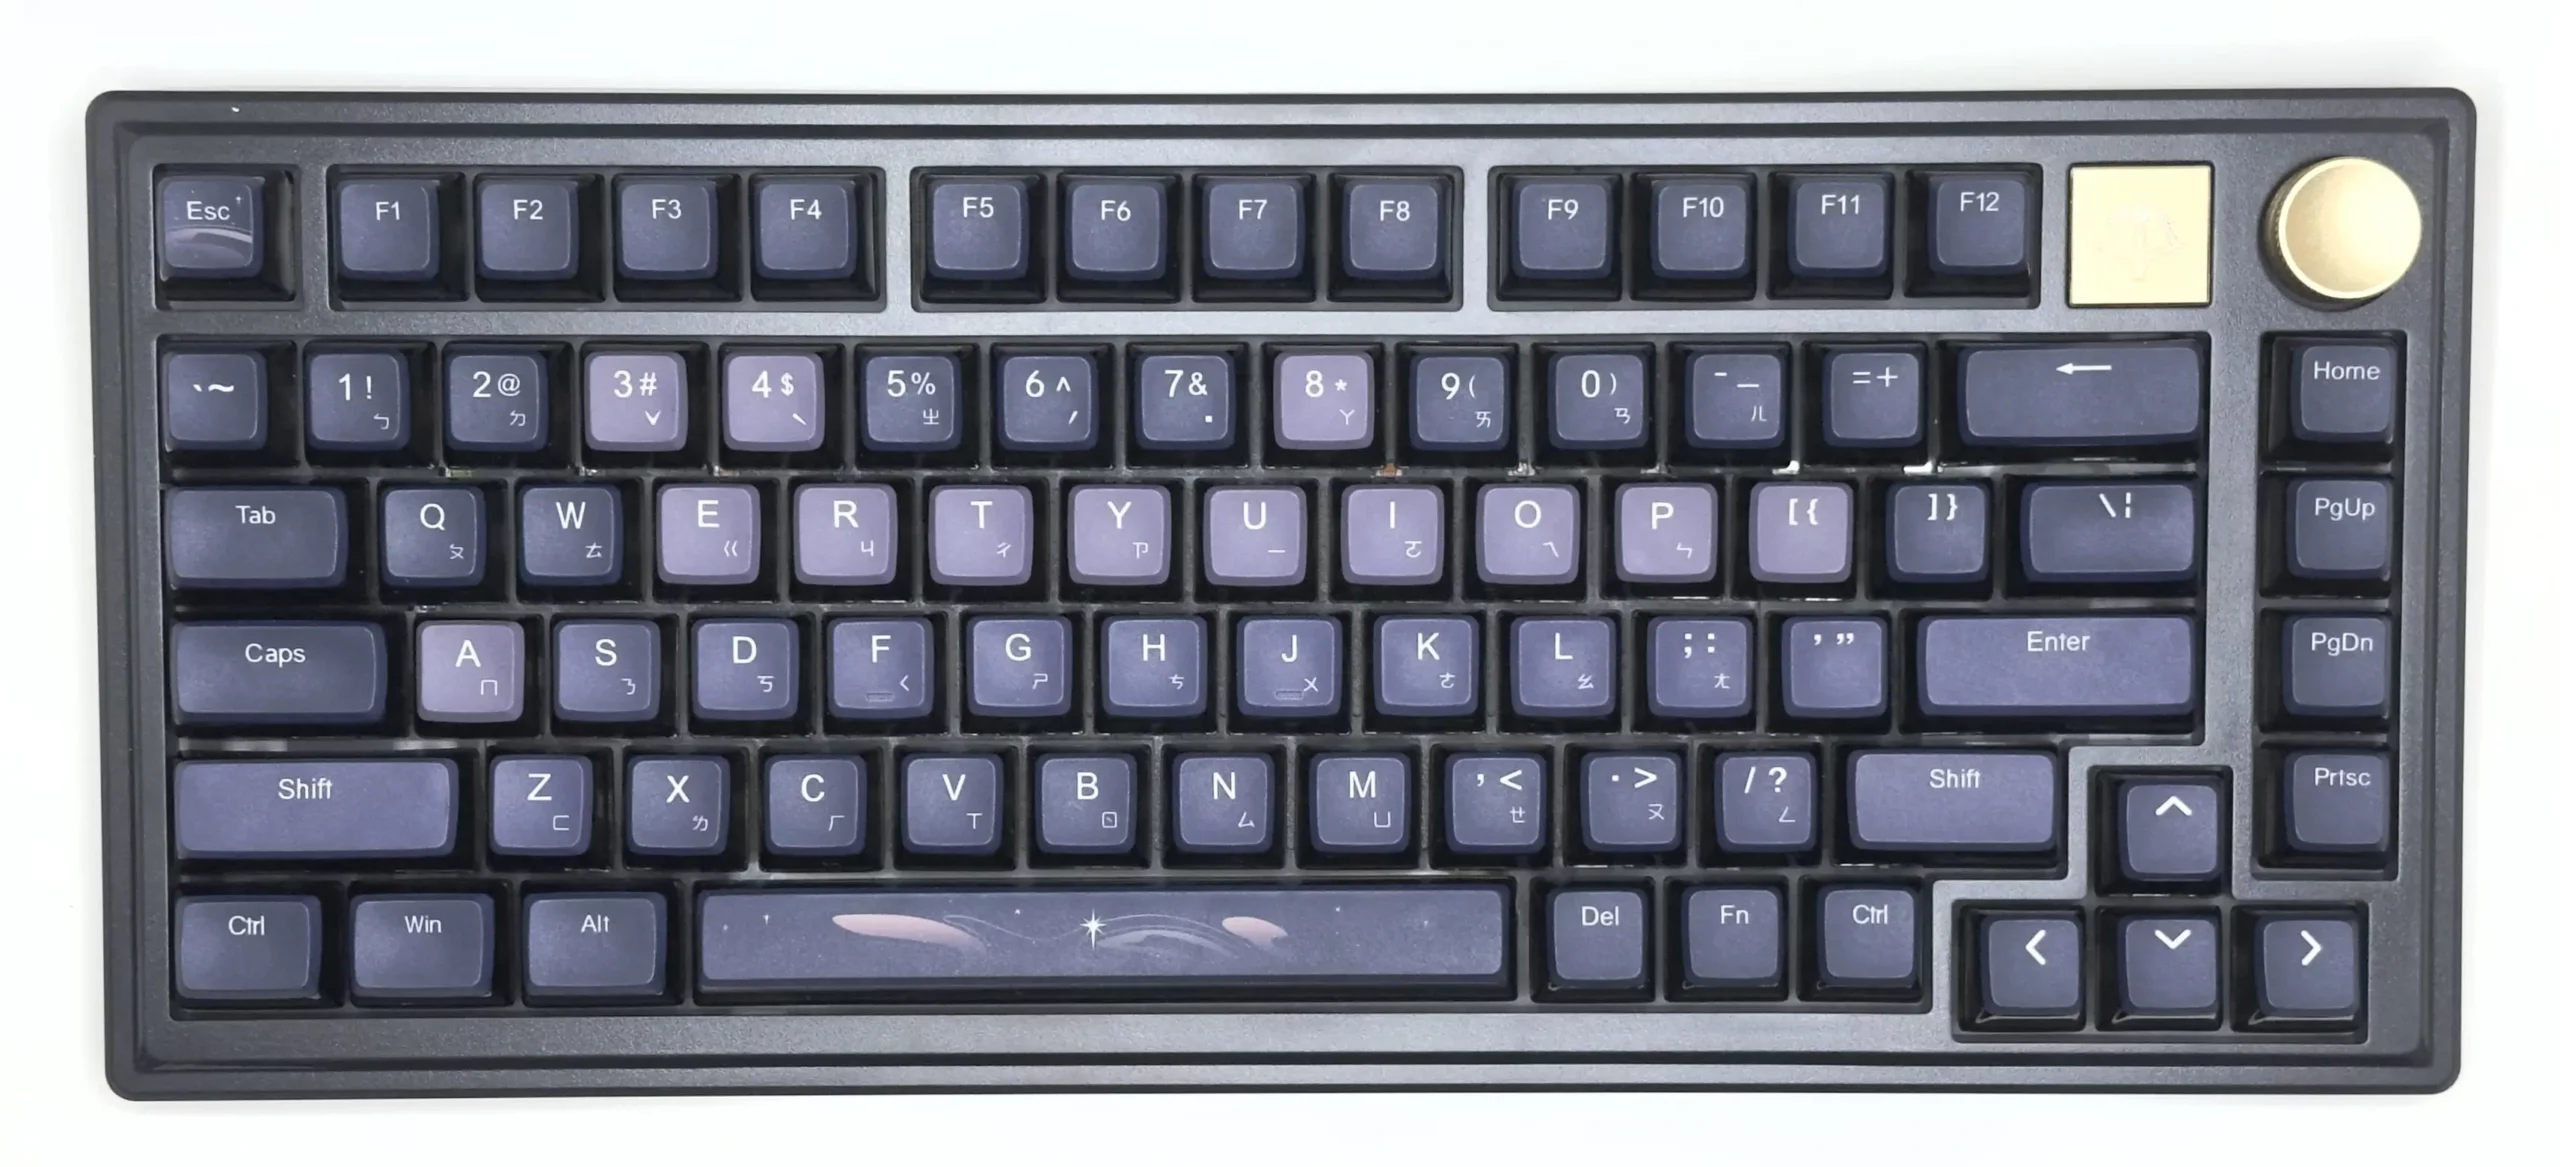 波軍 POJUN PQ01 鍵盤本體